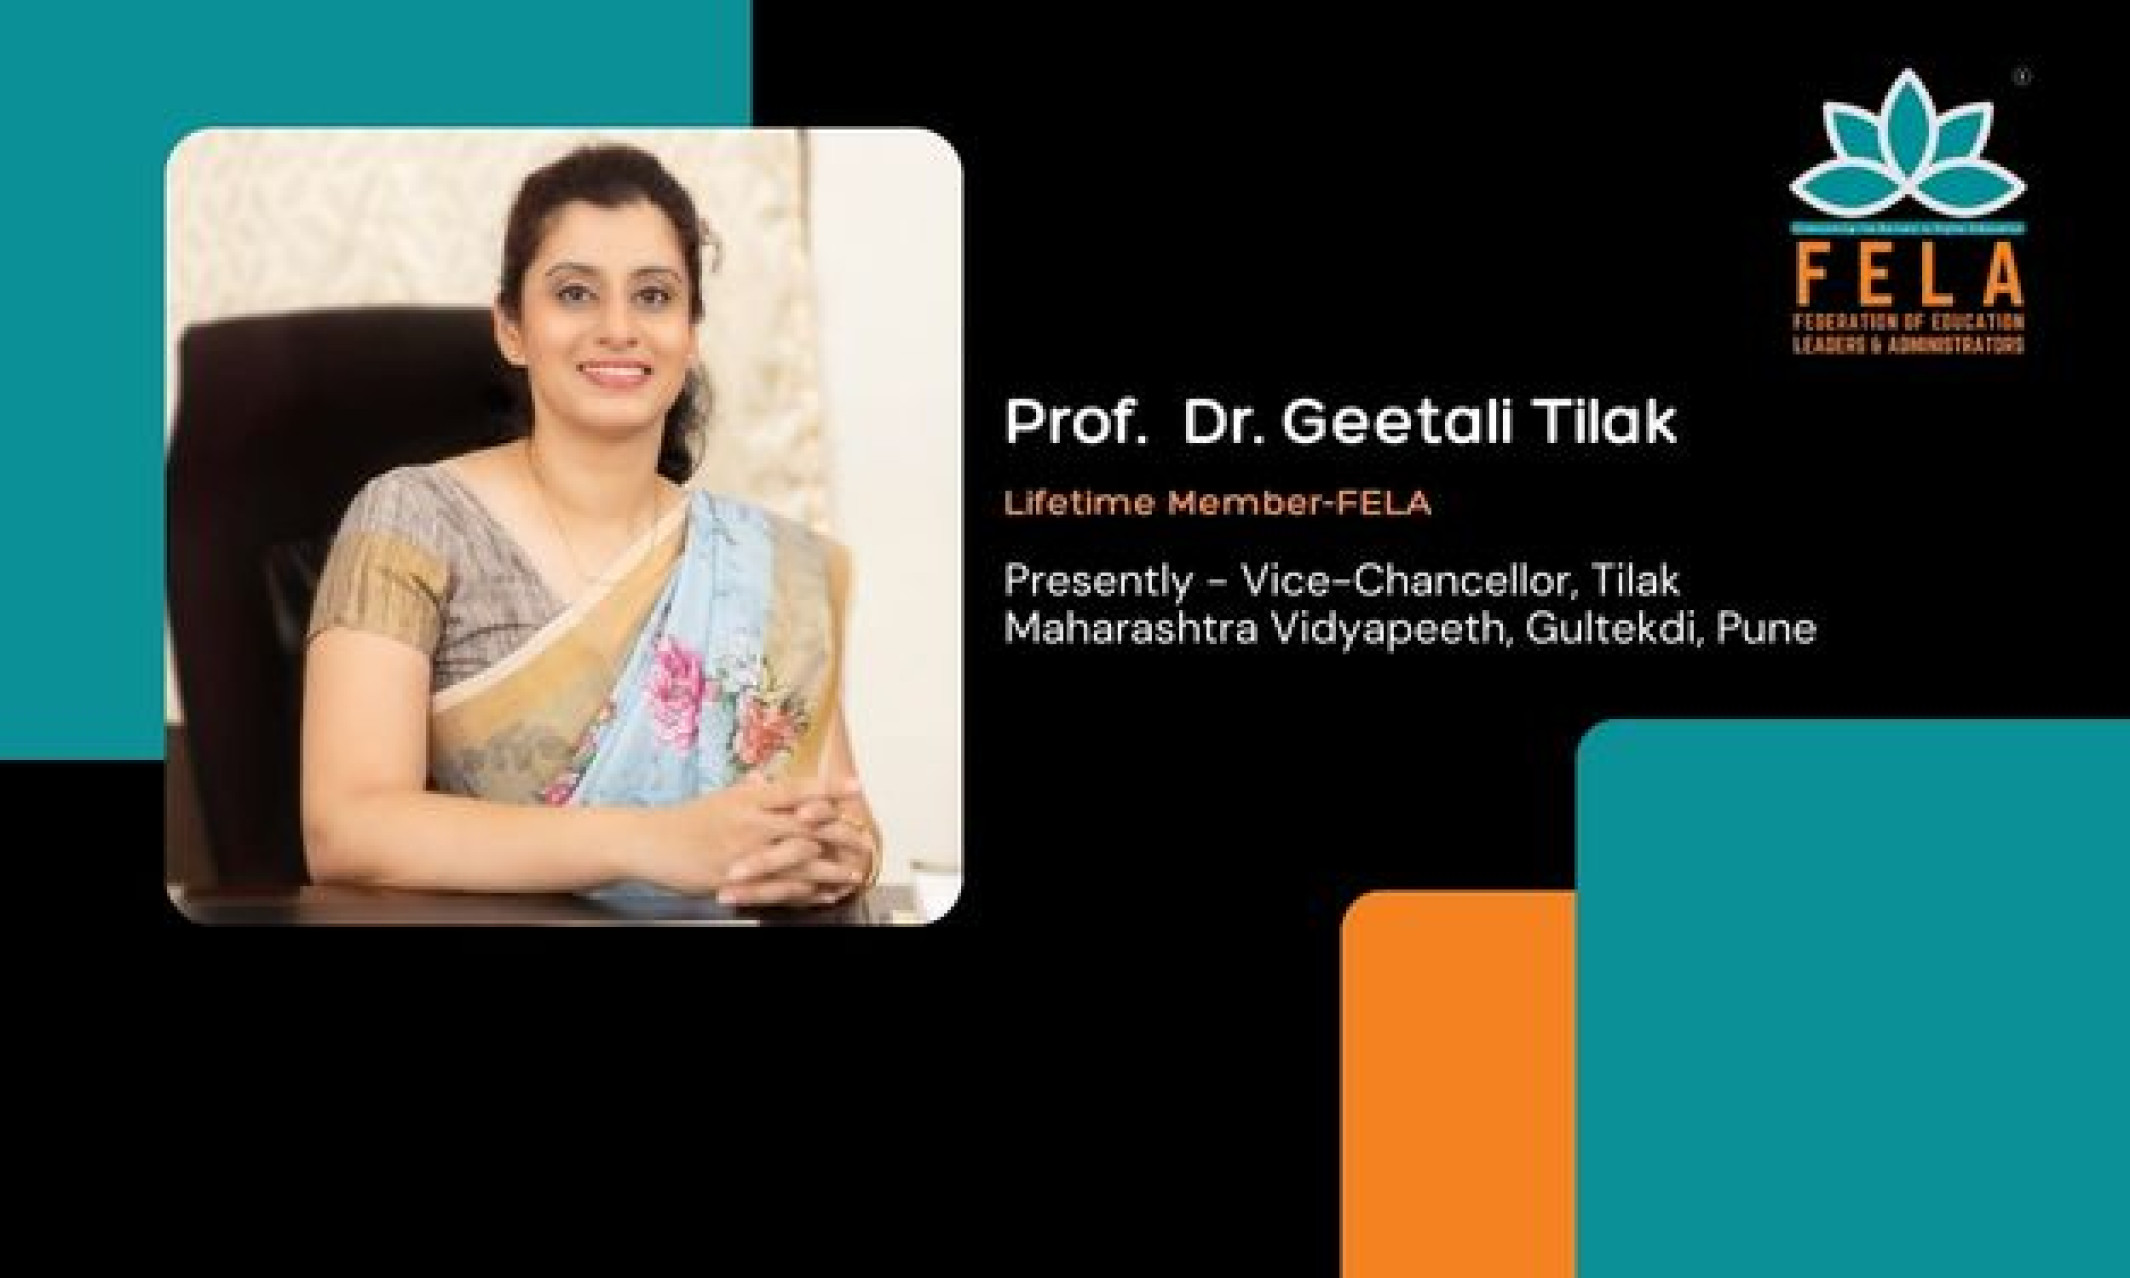 Prof. Dr. Geetali Tilak